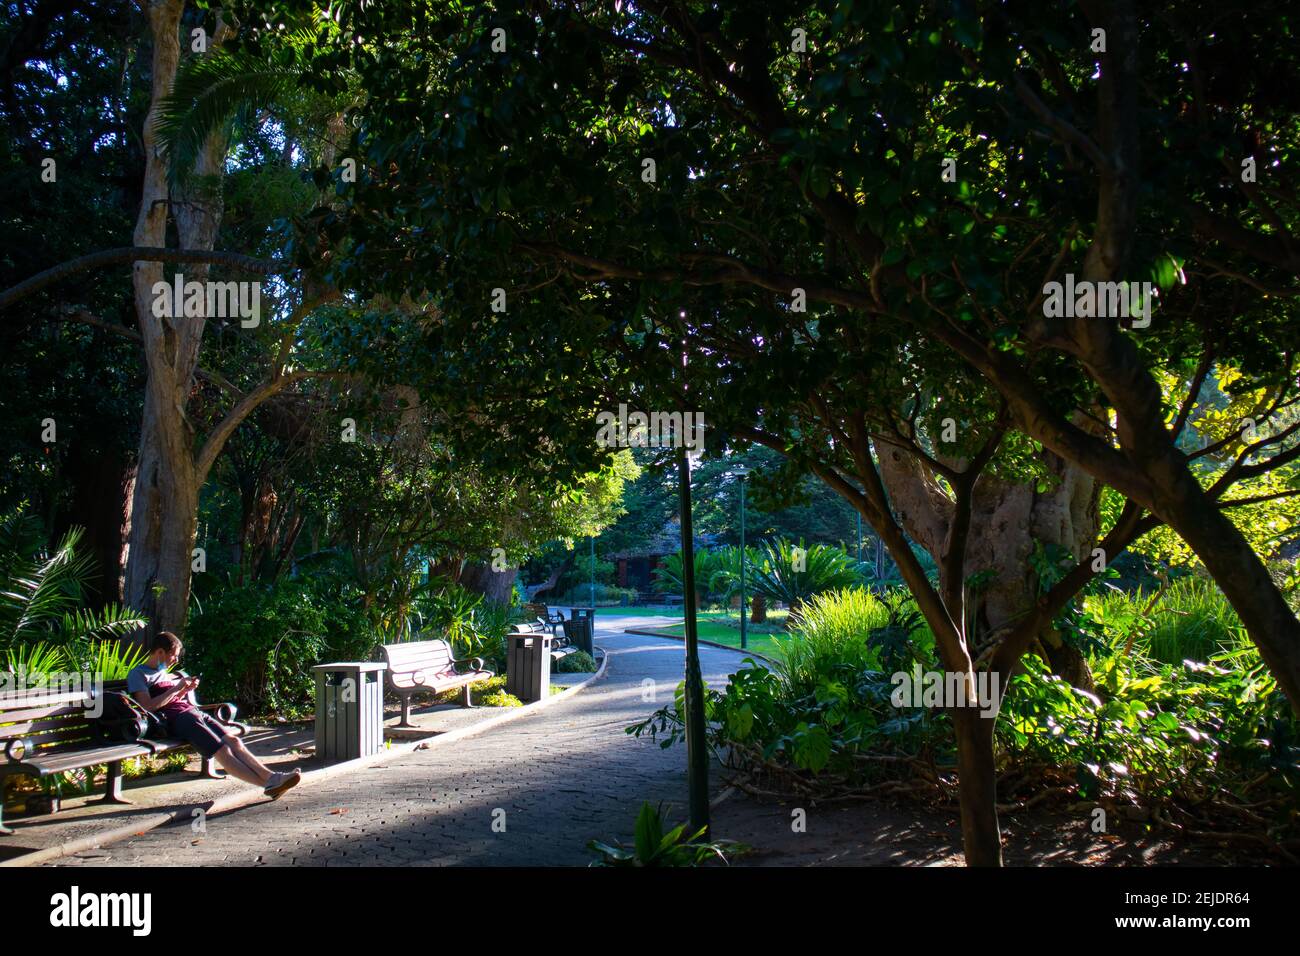 Jardines- Ciudad del Cabo, Sudáfrica - 19-02-2021 tarde tranquila en los Jardines de Ciudad del Cabo bajo la sombra. Hombre sentado en un banco en primer plano. Foto de stock